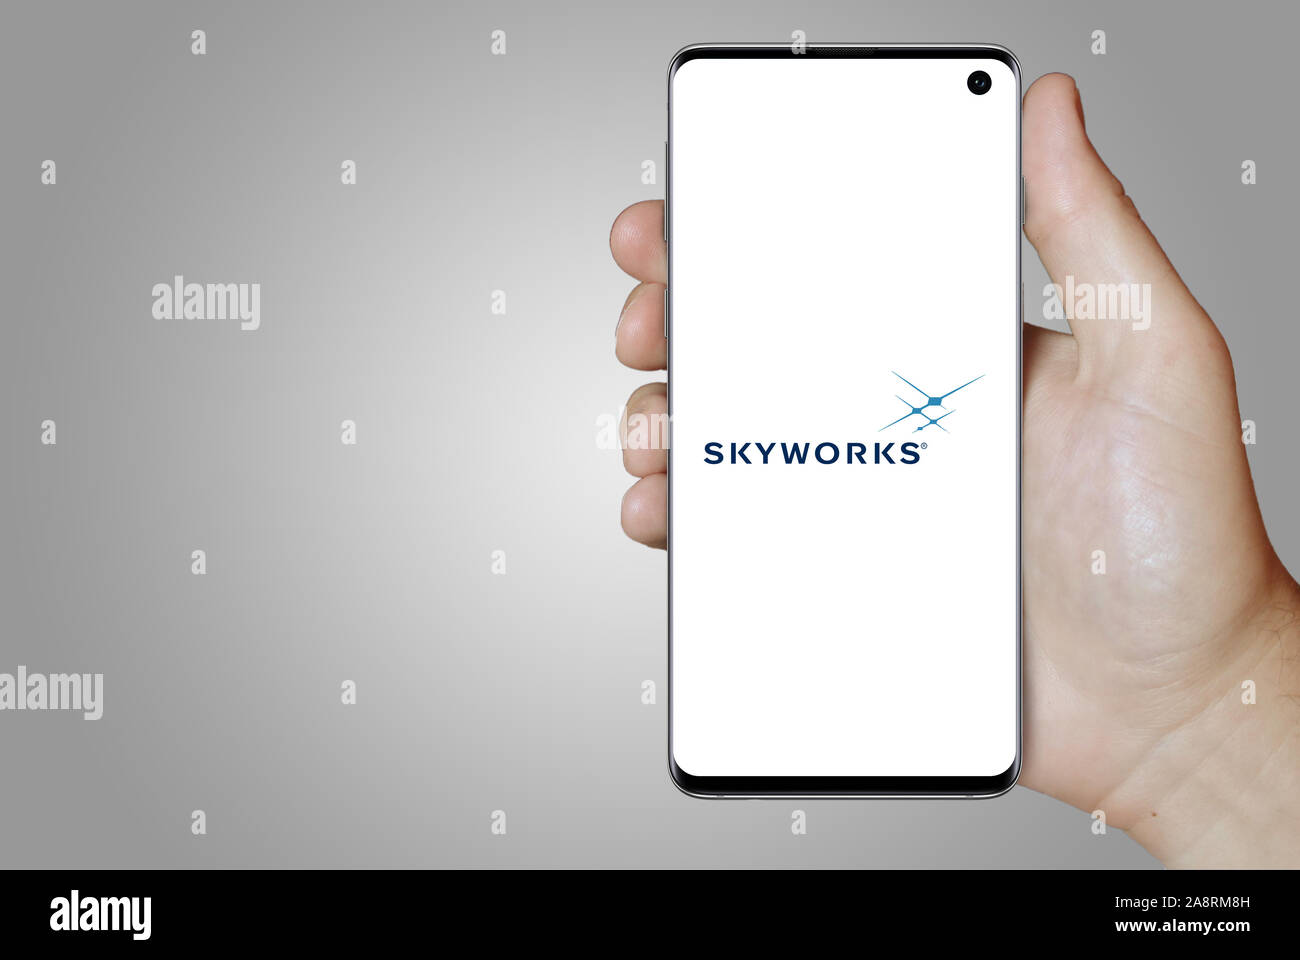 Il logo della società pubblica Skyworks Solutions visualizzata su uno smartphone. Sfondo grigio. Credito: PIXDUCE Foto Stock